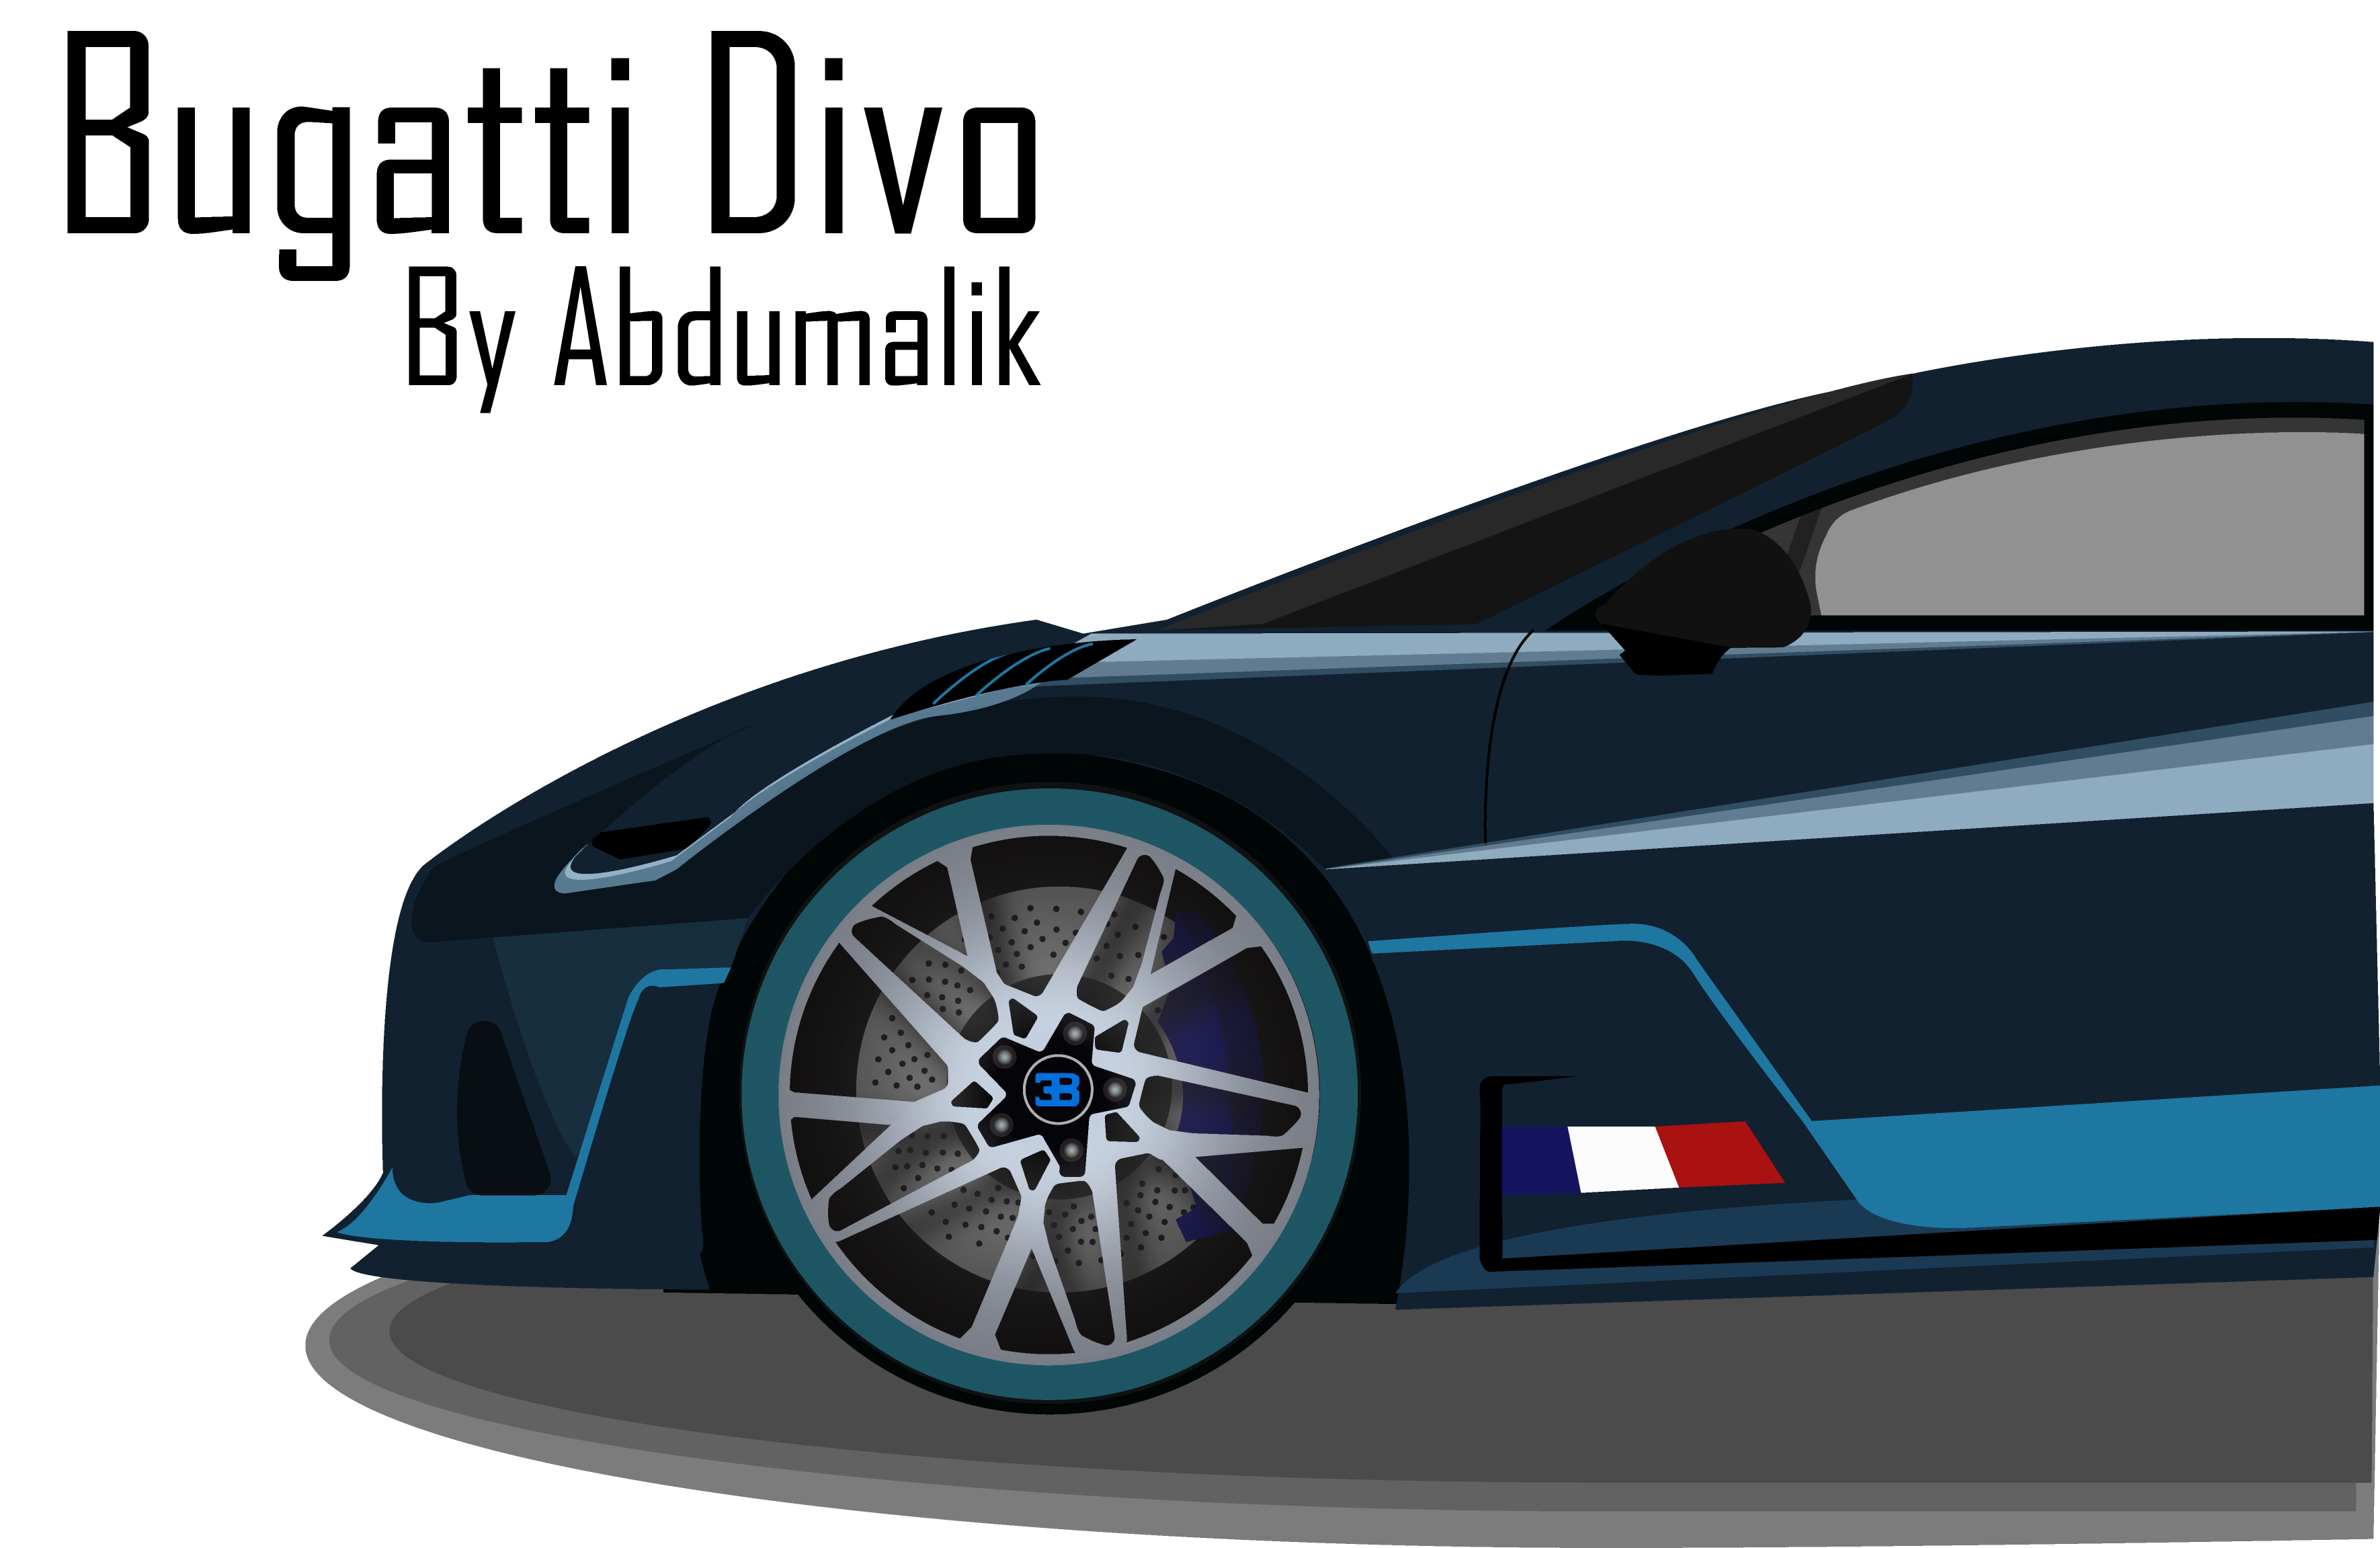 Bugatti Divo vector illustration by Abdumalik Ganijonov